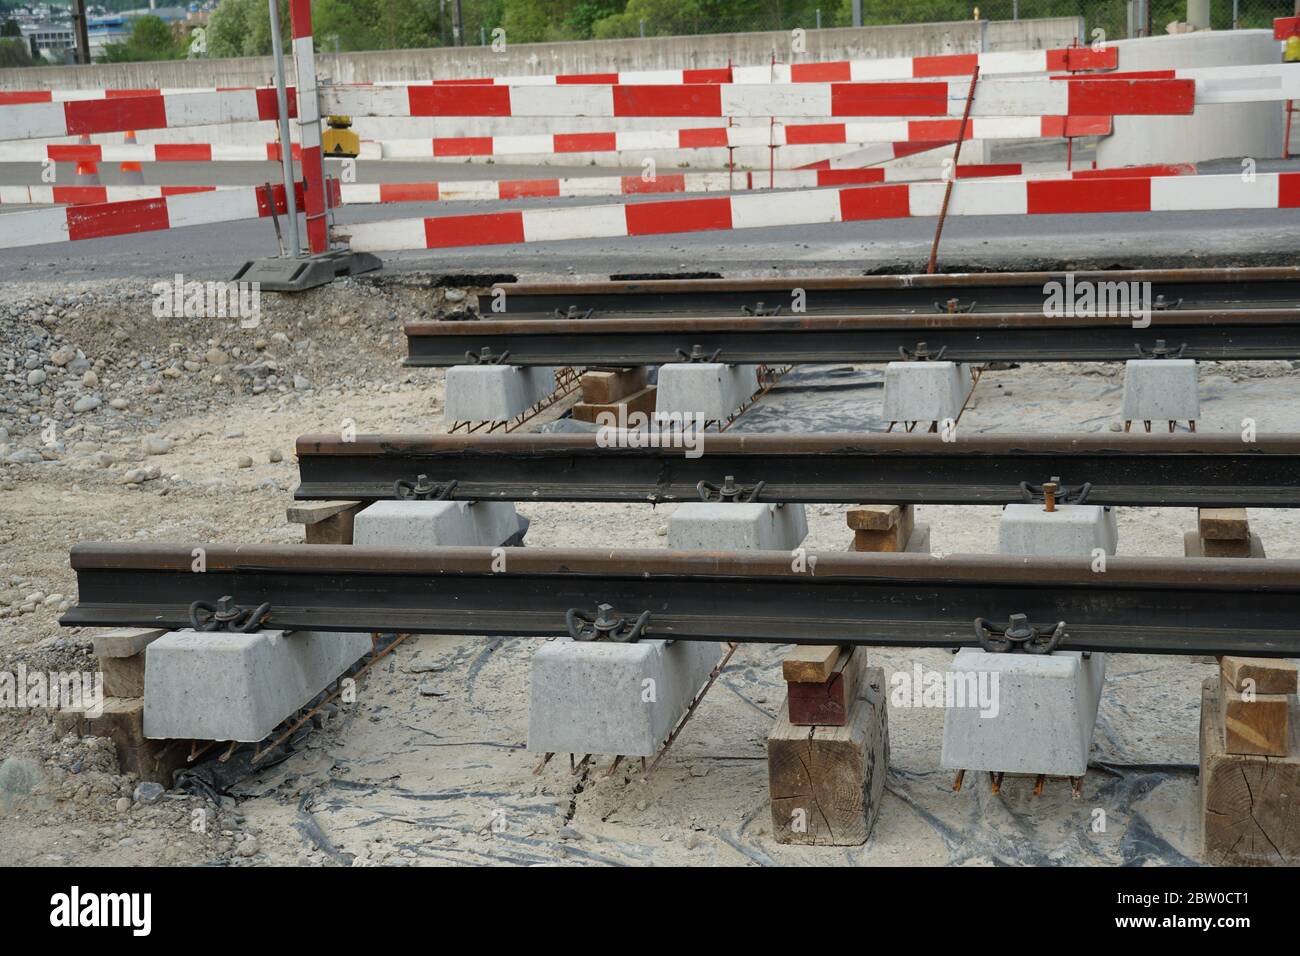 Schienen für die Straßenbahn bereit, auf einer Tiefbau-Baustelle installiert werden, Bau Straßenbahnlinie mit roten und weißen Barriere Planken. Stockfoto